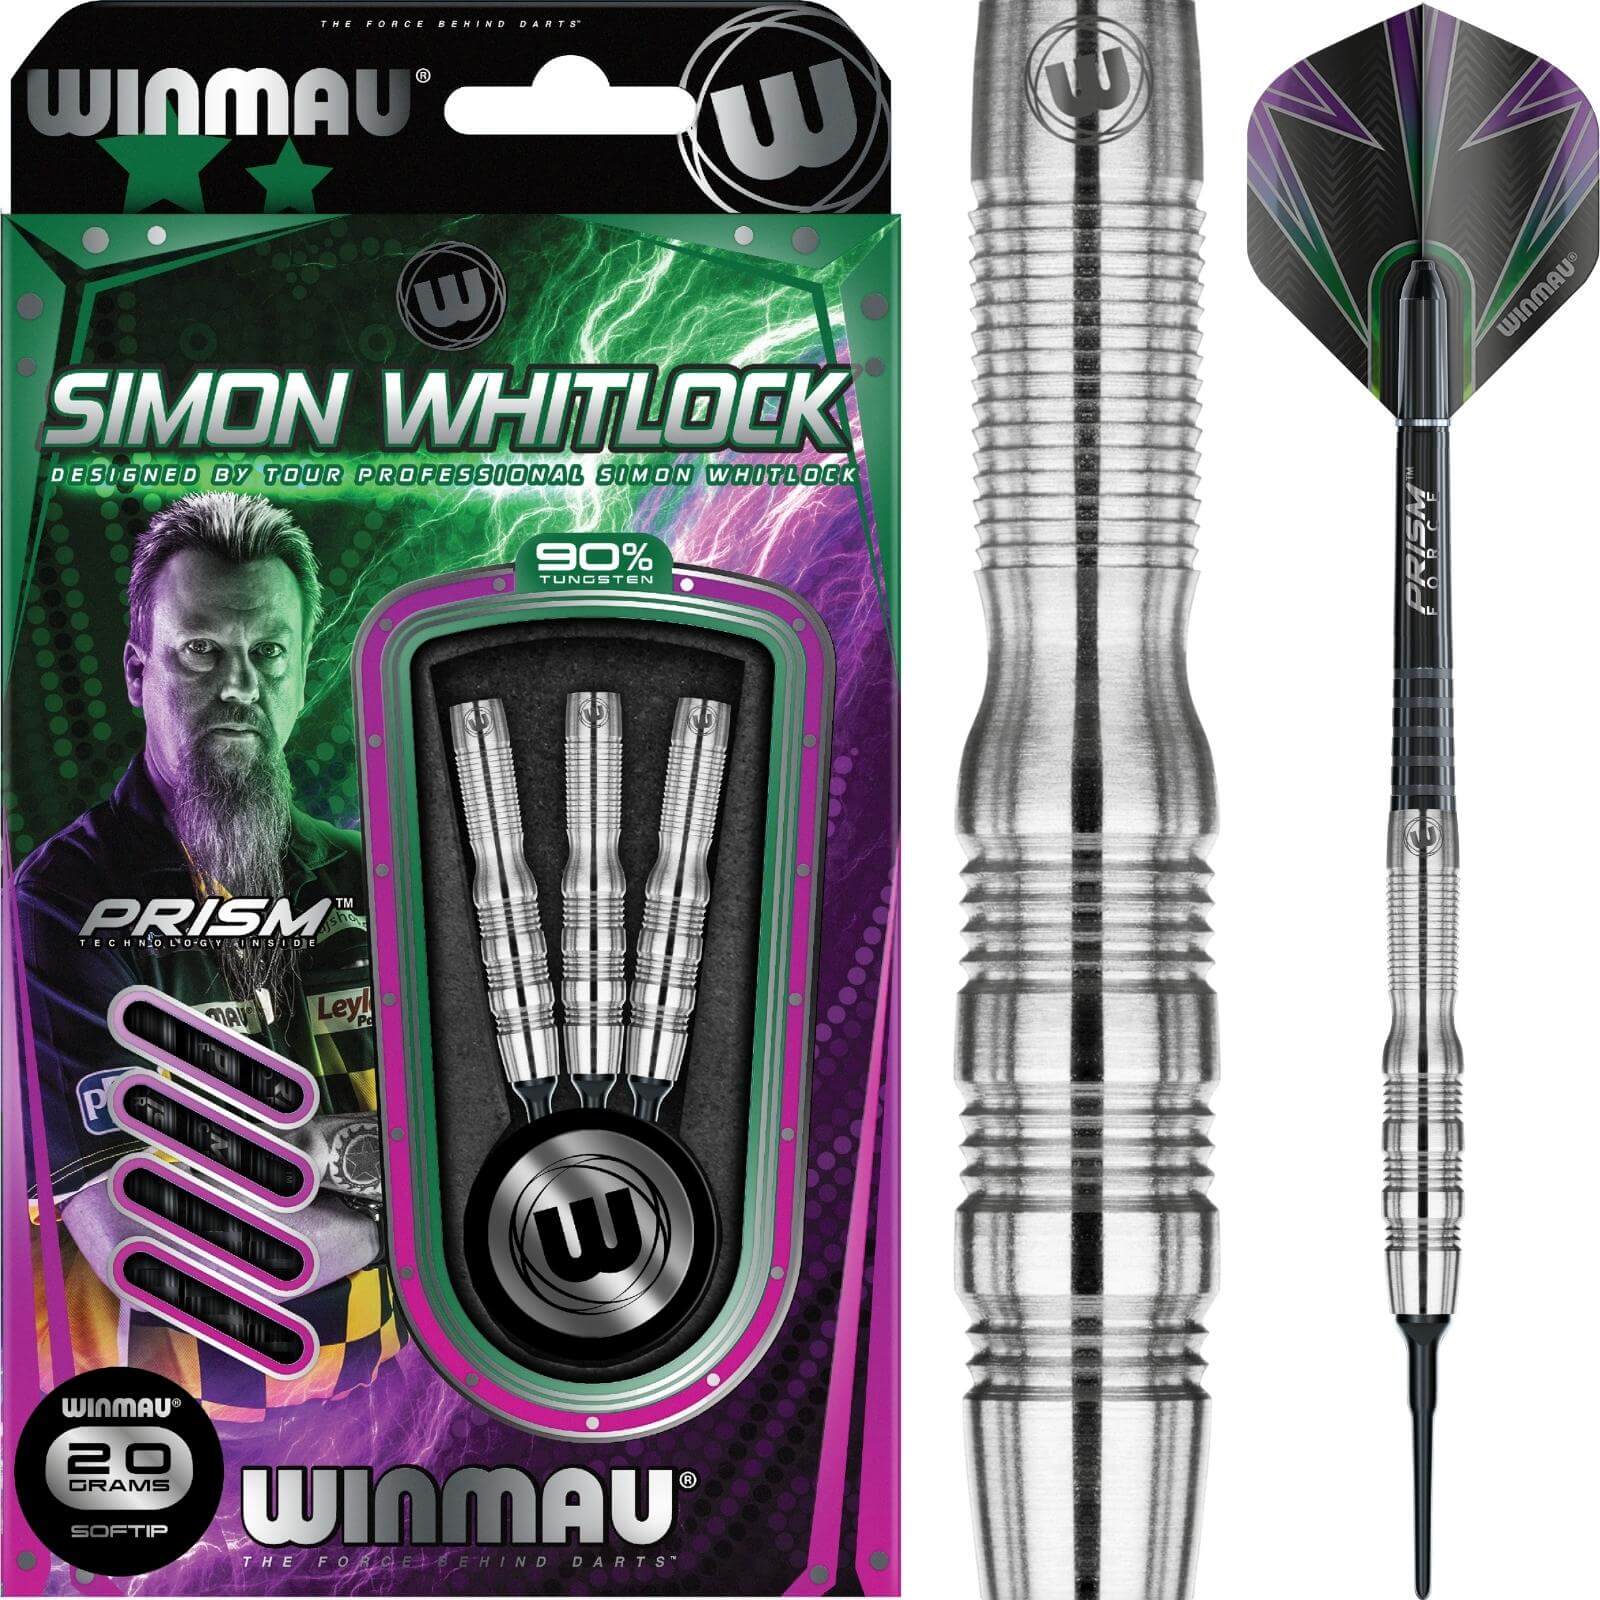 Darts - Winmau - Simon Whitlock Darts - Soft Tip - 90% Tungsten - 18g 20g 